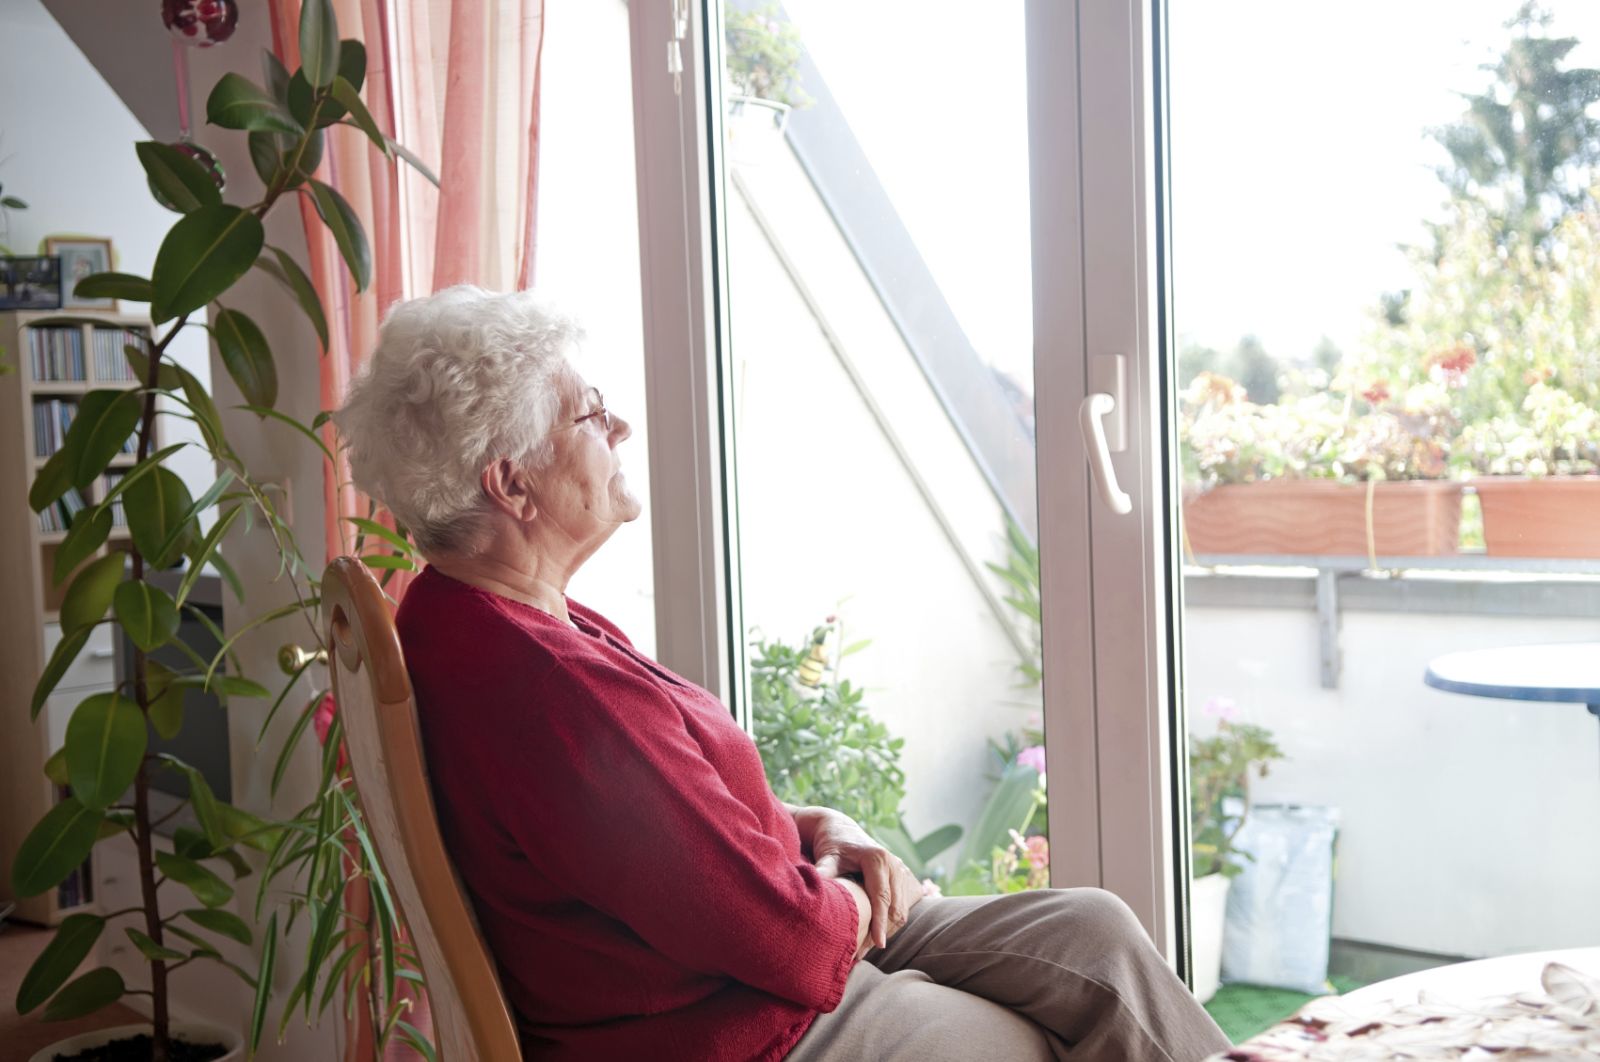 Đảm bảo người già sống an toàn tại nhà, không phải di chuyển đến các trung tâm dưỡng lão là mong muốn của nhiều gia đình